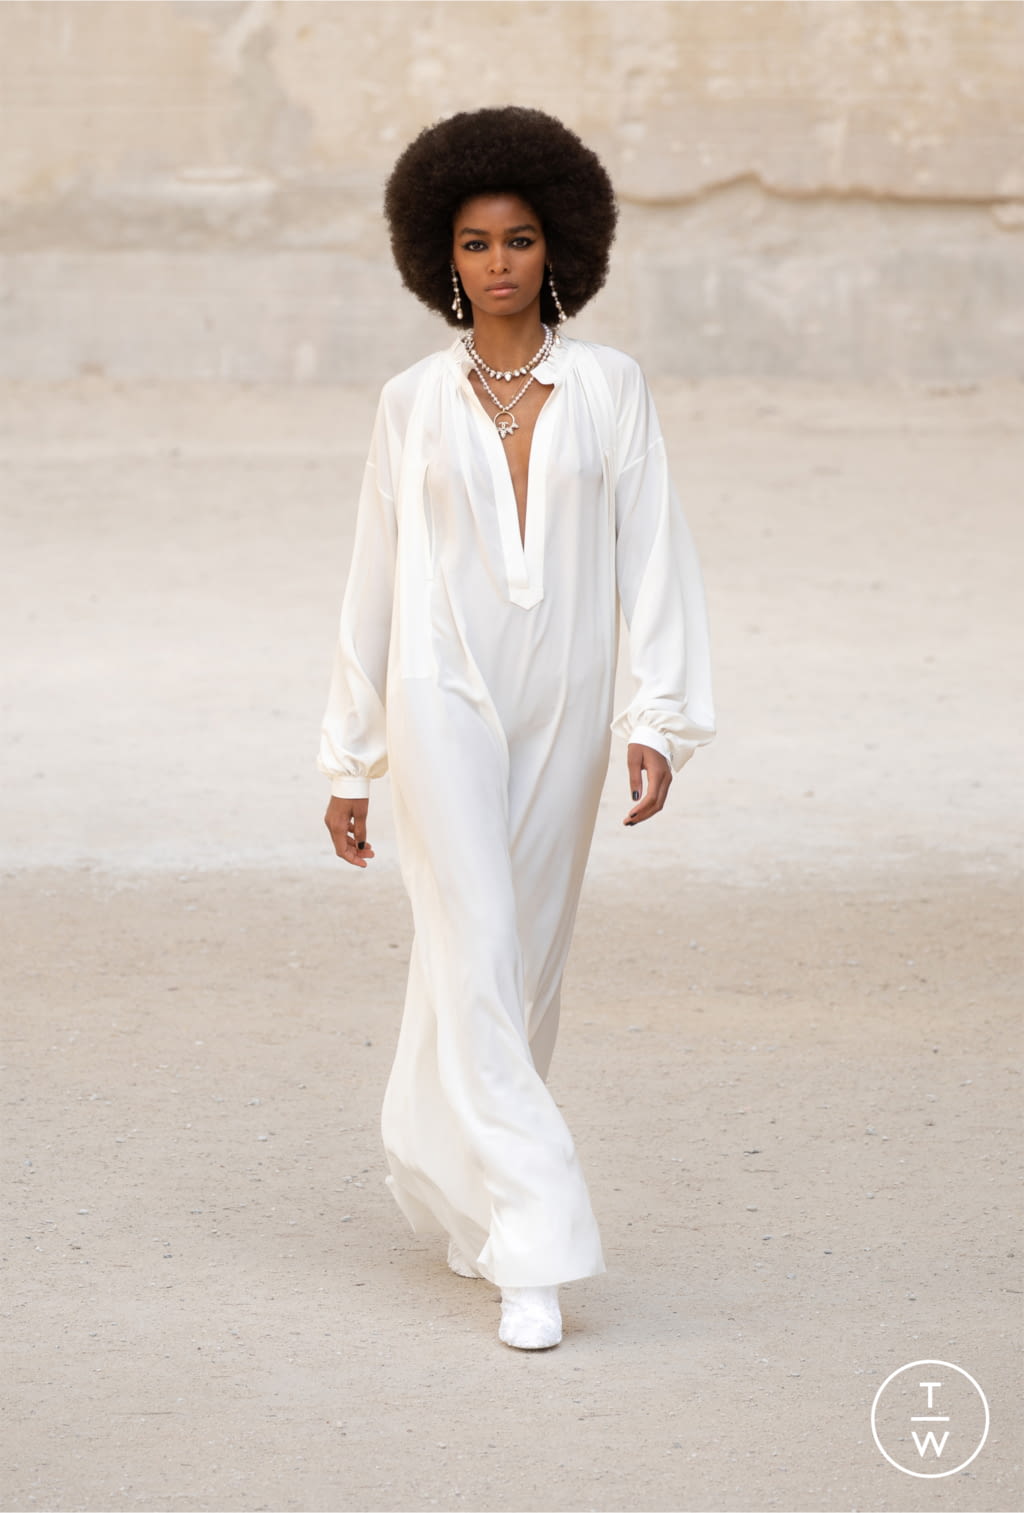 Chanel RE22 womenswear #59 - Tagwalk: The Fashion Search Engine